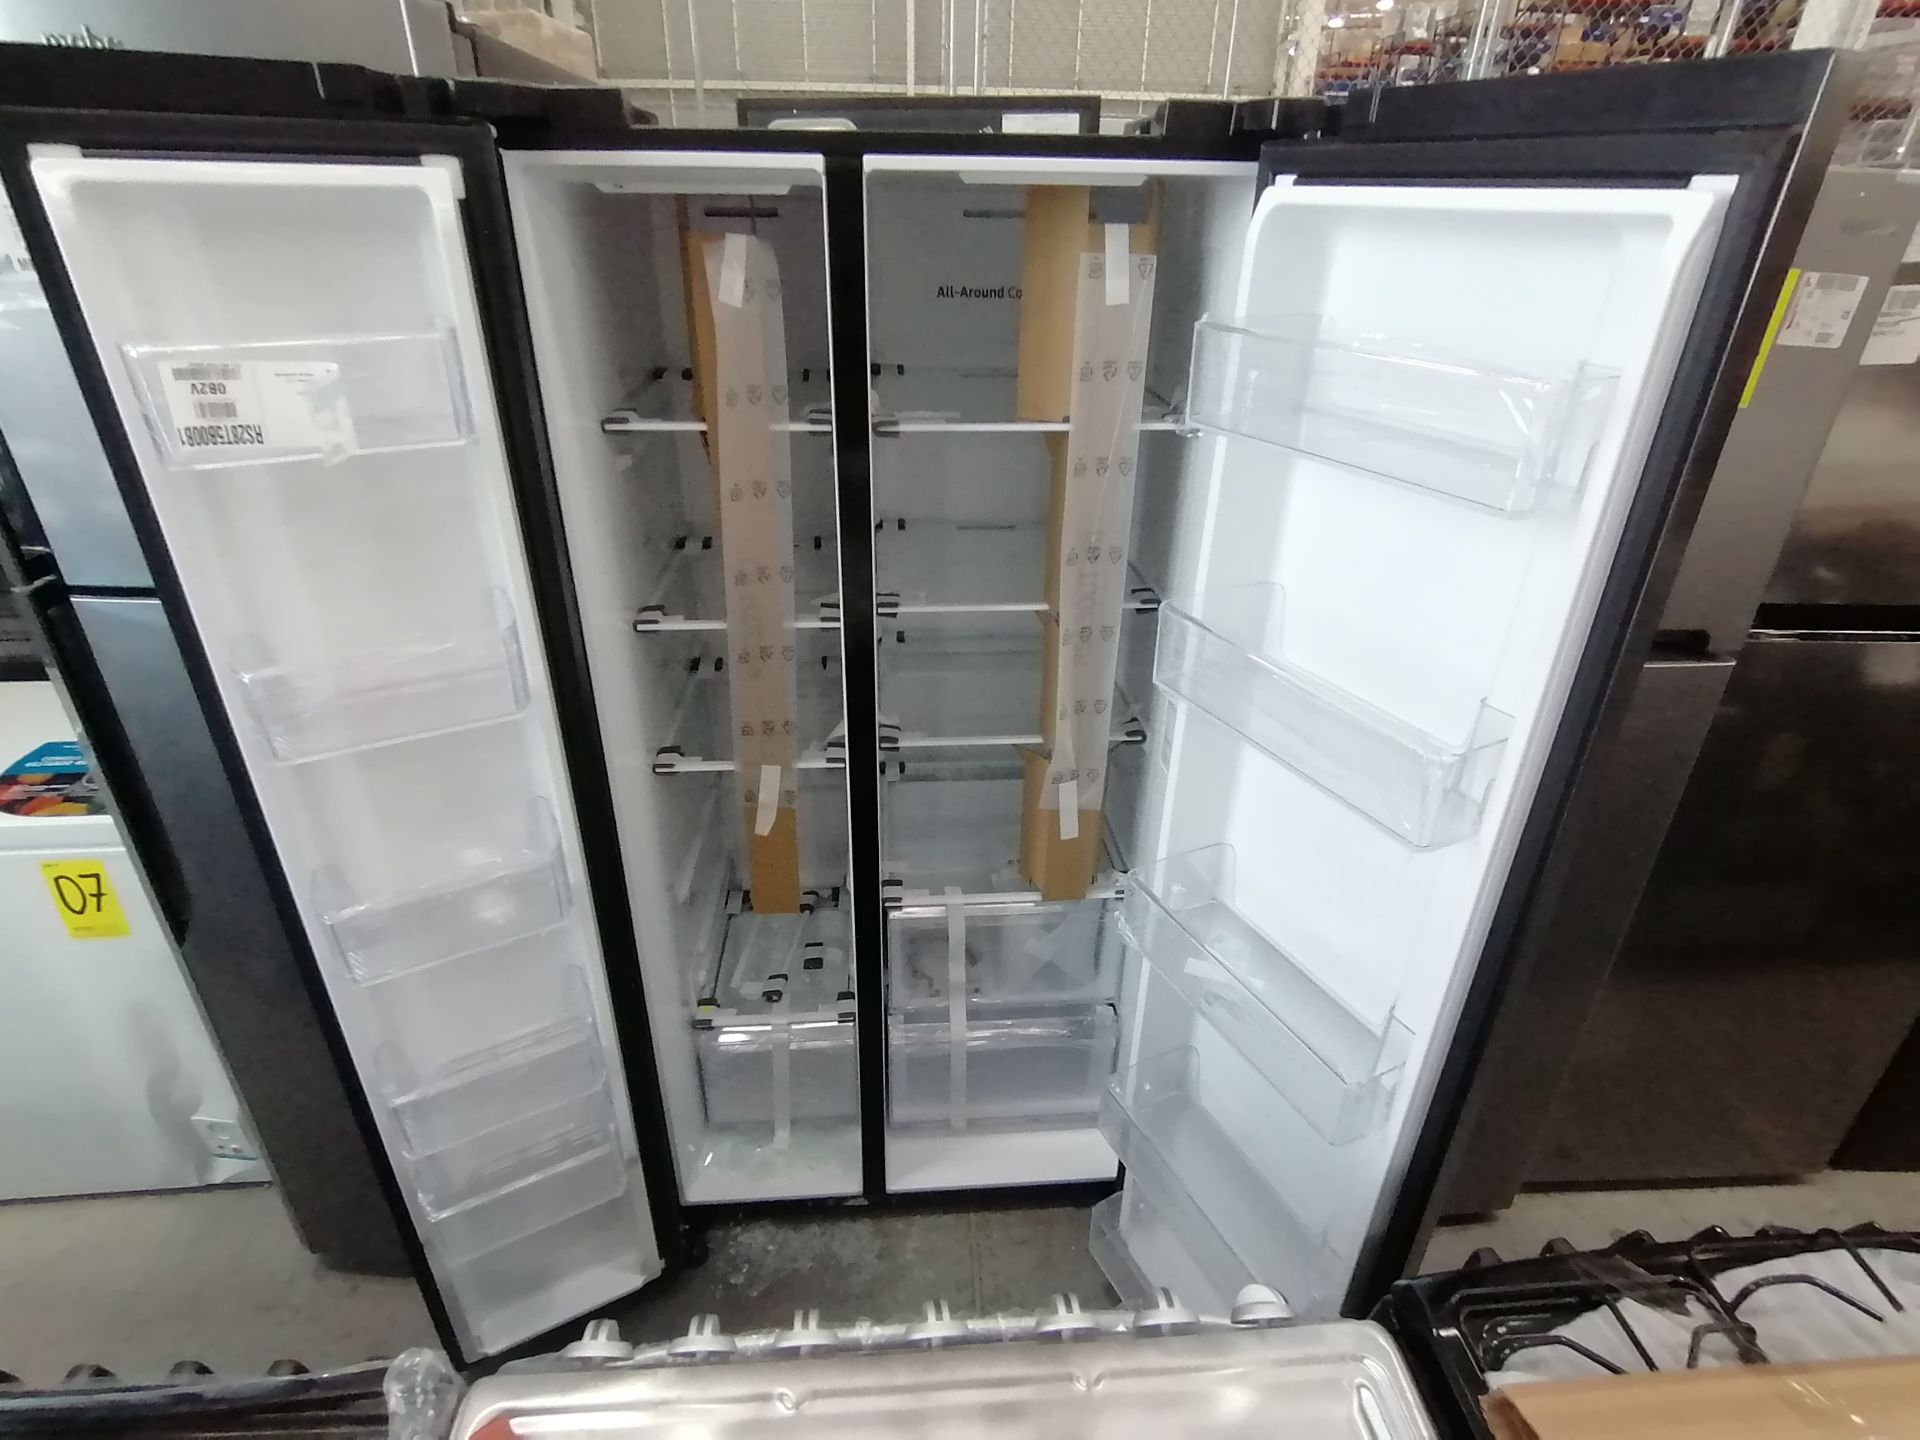 1 Refrigerador Marca Samsung, Modelo RS28T5B00B1, Serie 0B2V4BBT300531L, Color Gris, Golpeado, Favo - Image 15 of 17